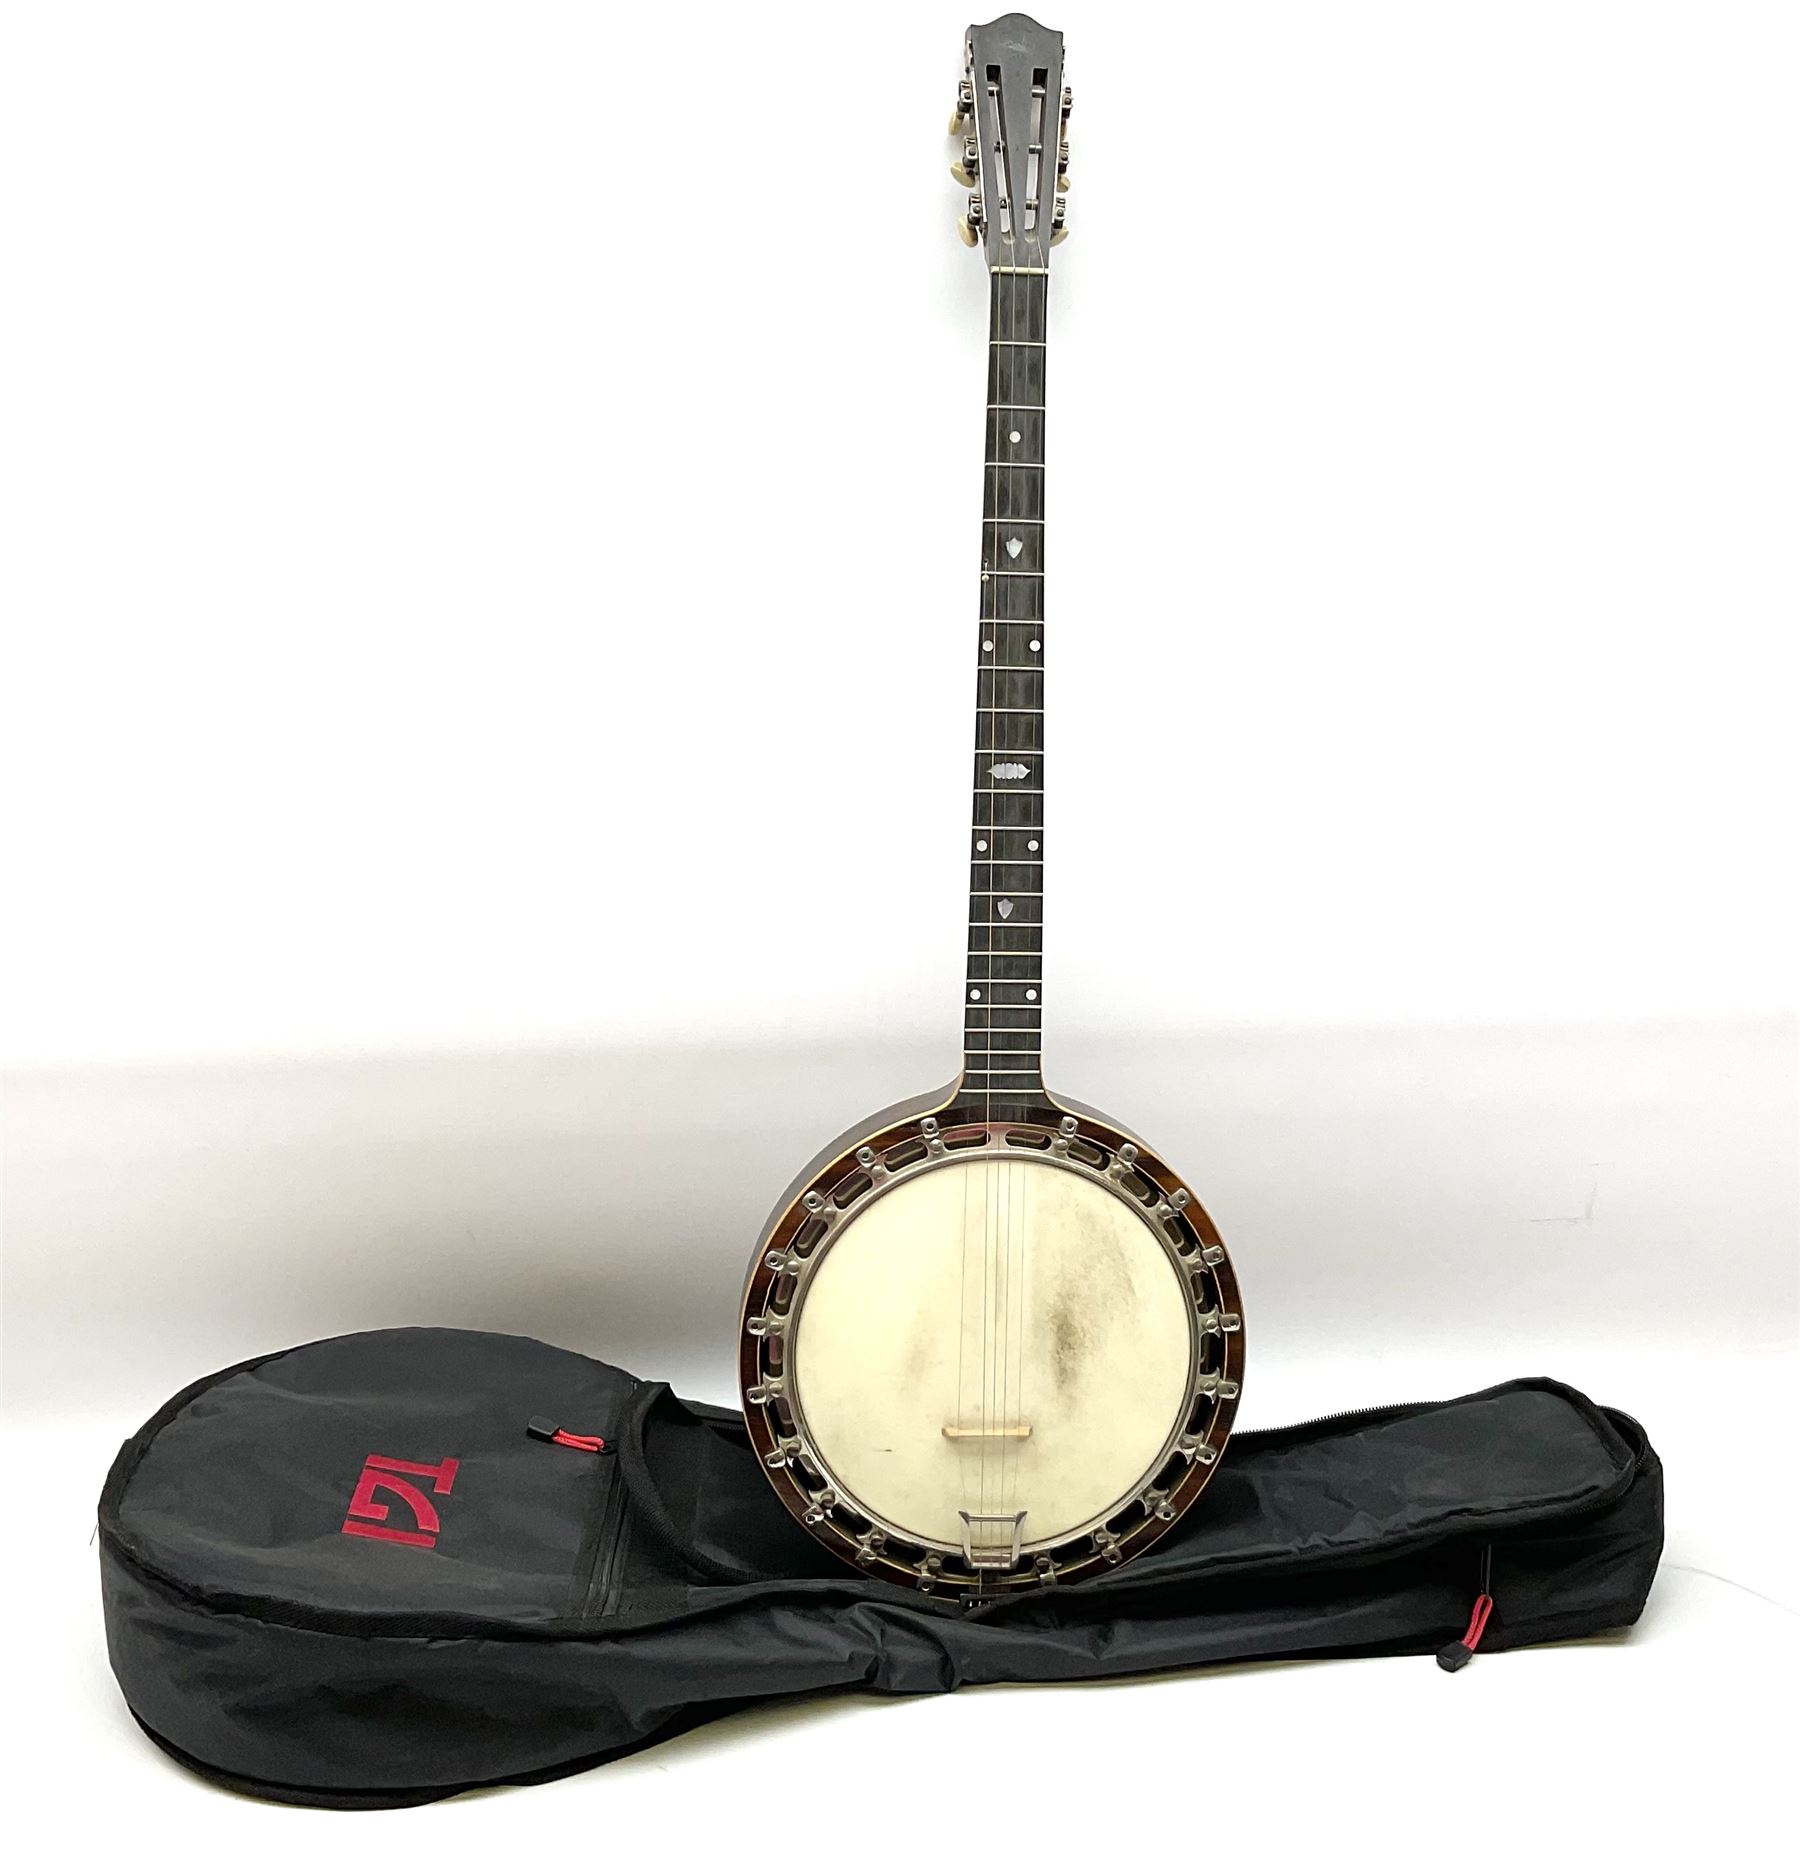 The Windsor Popular Model 5 five string closed back banjo